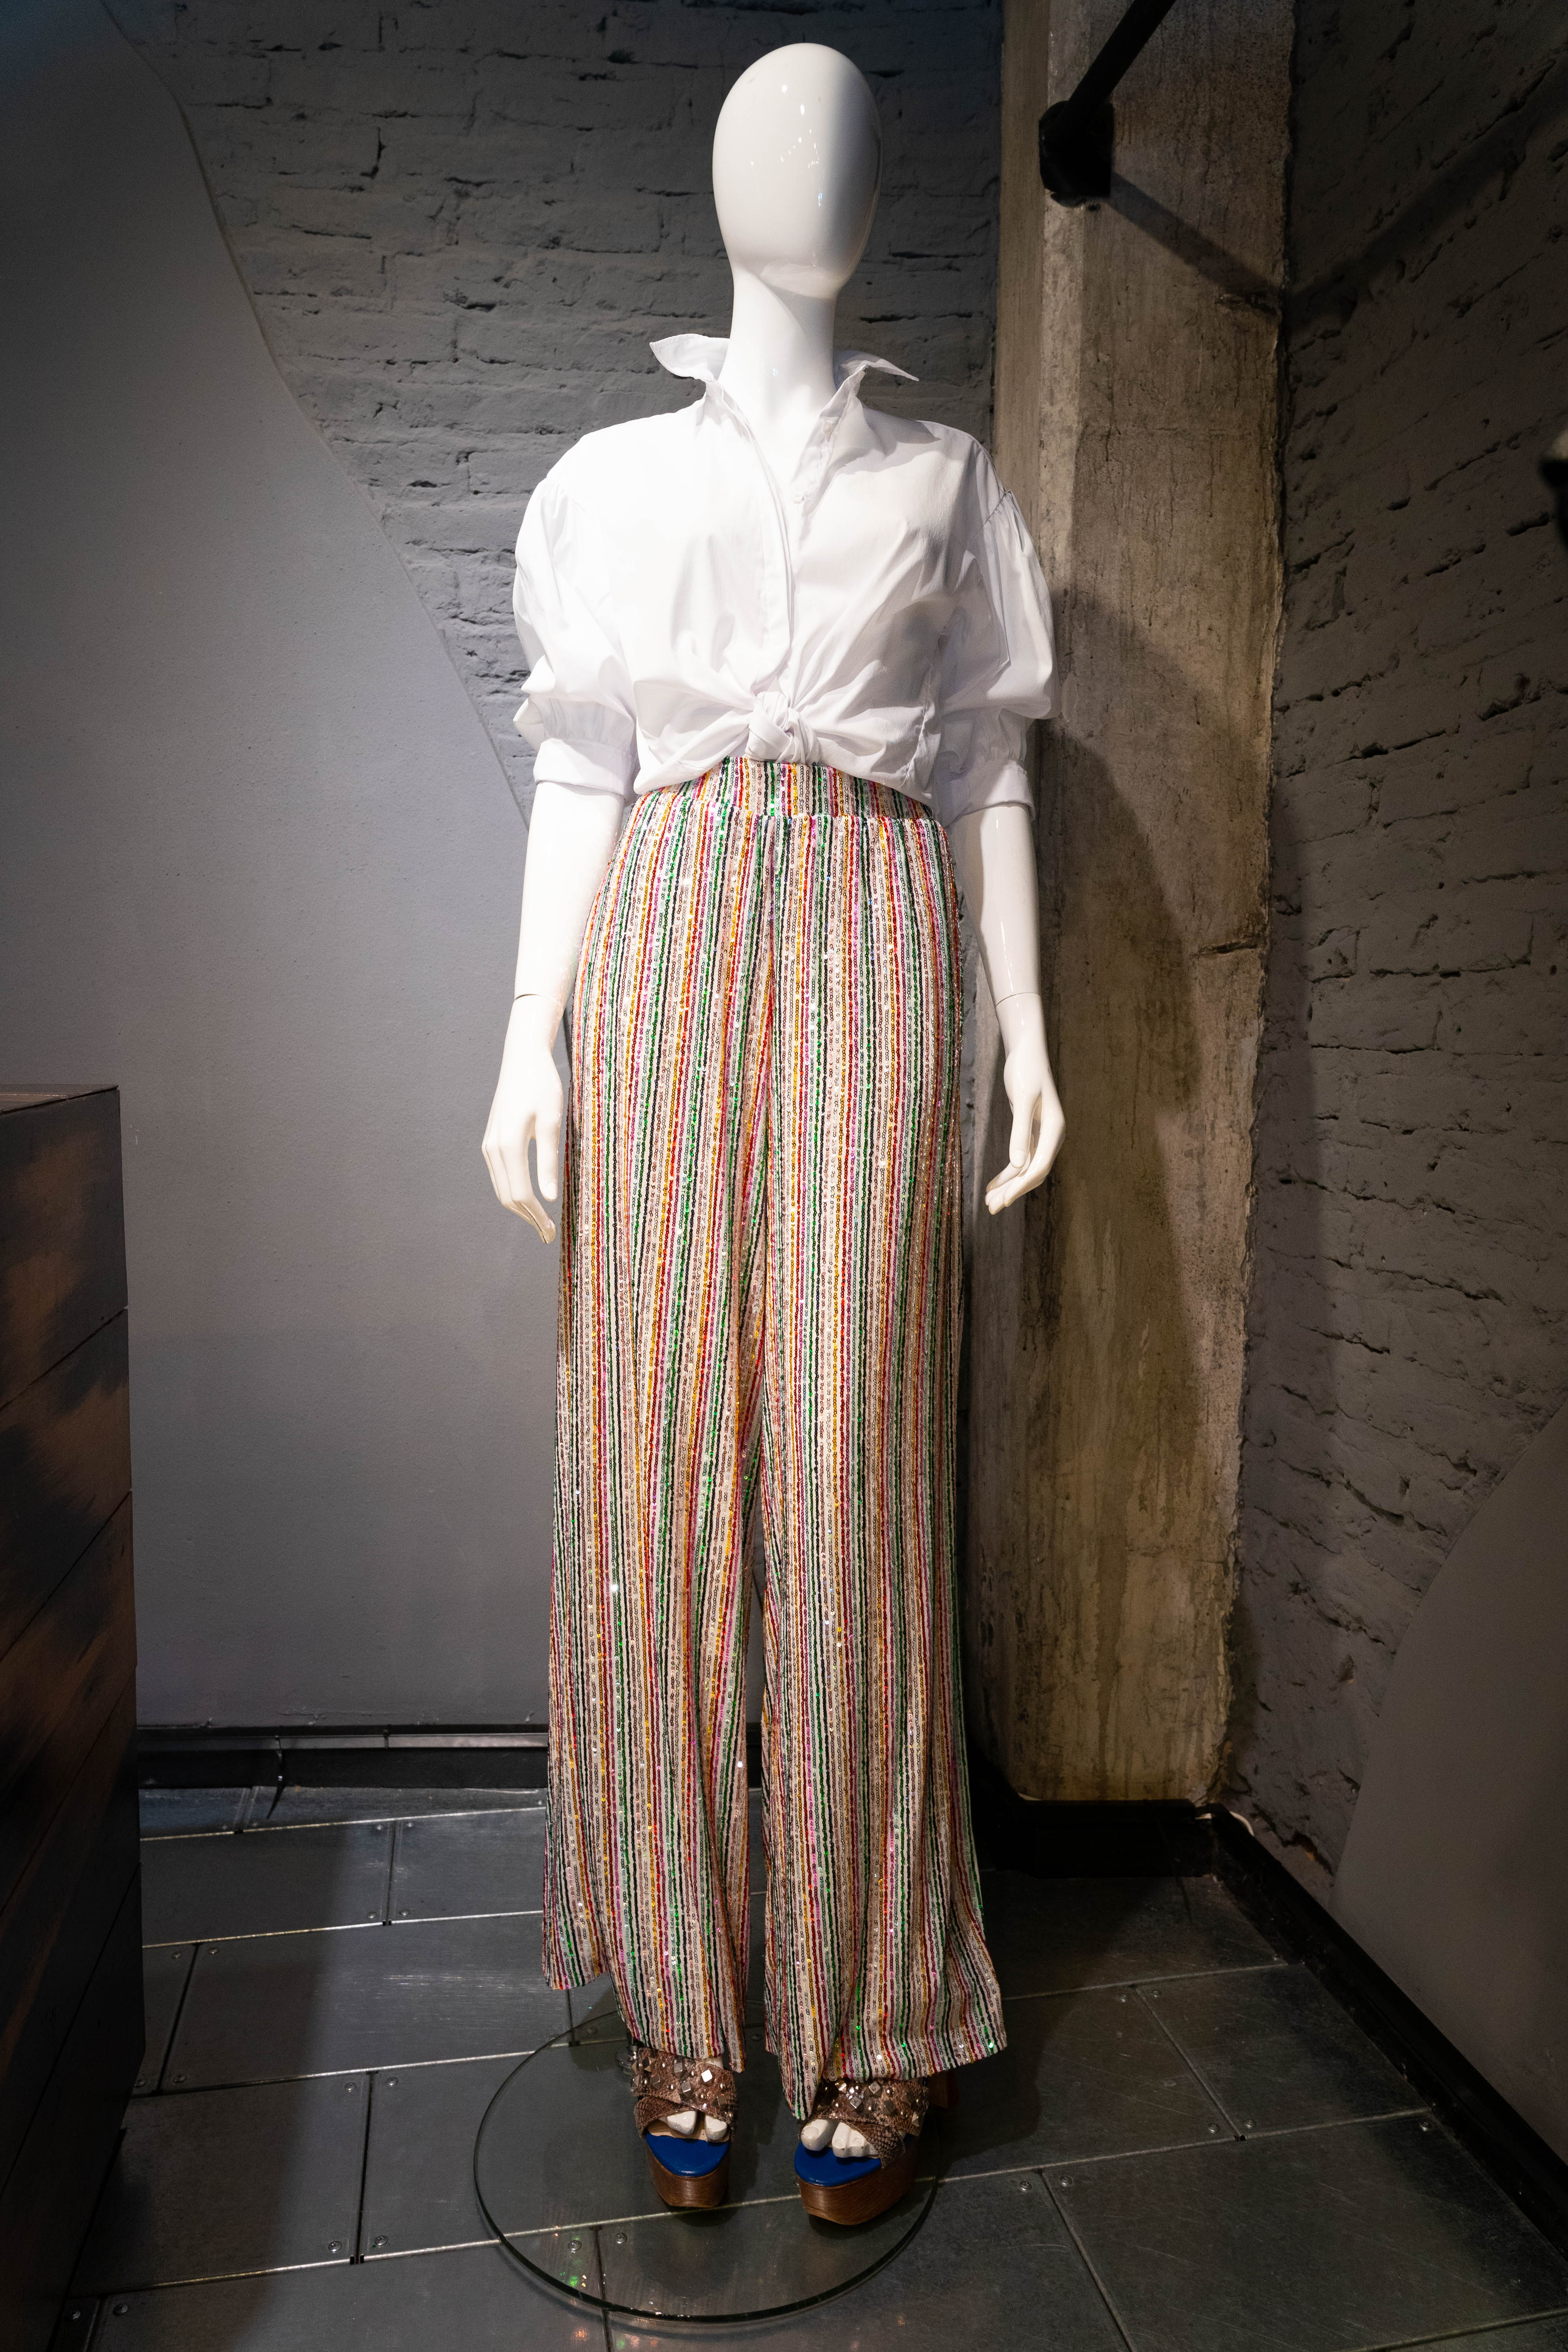 Camisa de algodón y pantalón de paillettes, la propuesta cómoda y elegante de Benito Fernández (Foto: Franco Fafasuli)